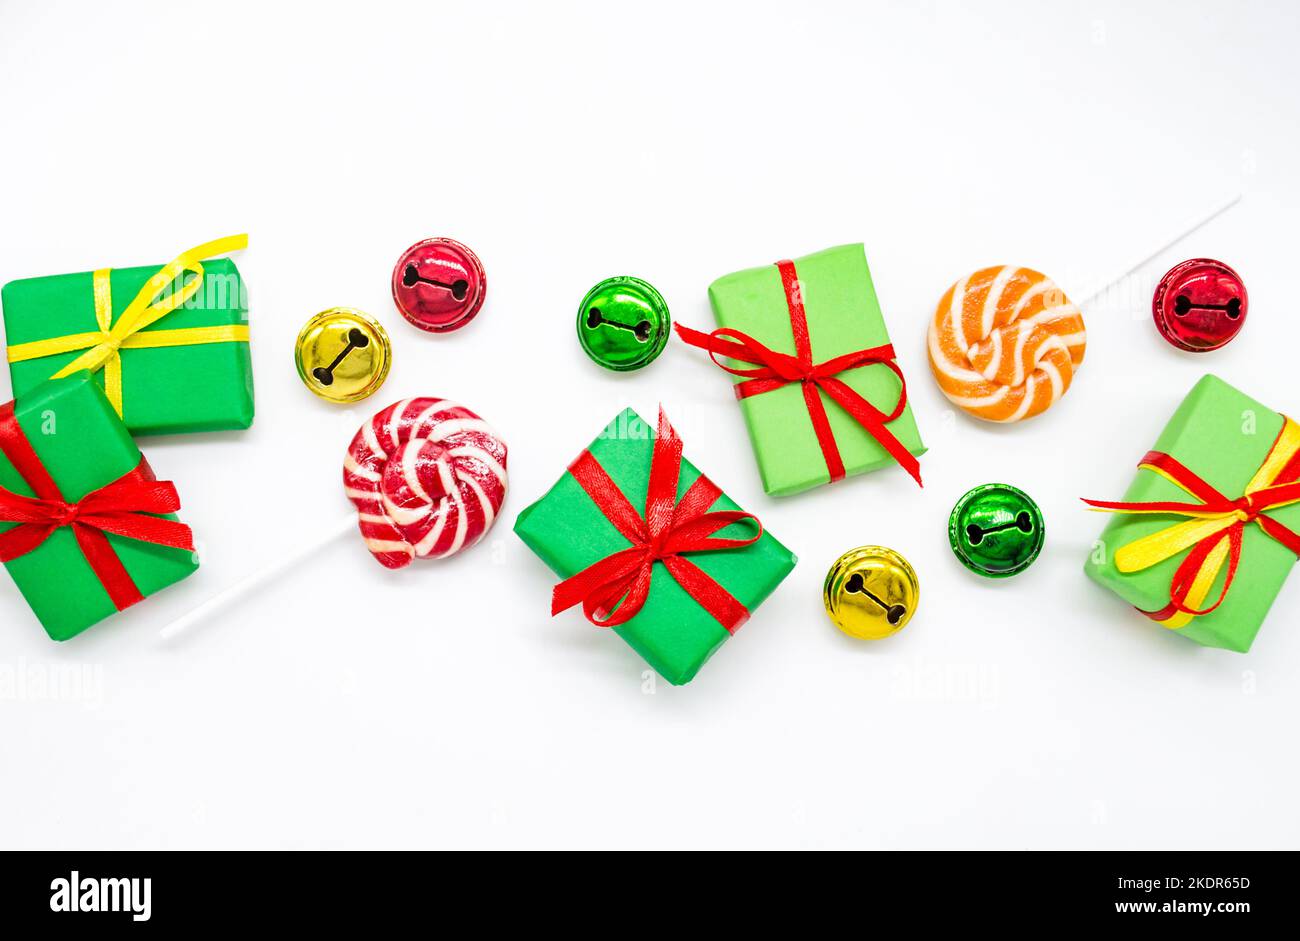 Joyeuses fêtes: Cadeaux avec des sucettes et des cloches rouges, vertes, dorées sur fond blanc, espace copie. Le concept de Noël, ventes, fêtes pour enfants Banque D'Images